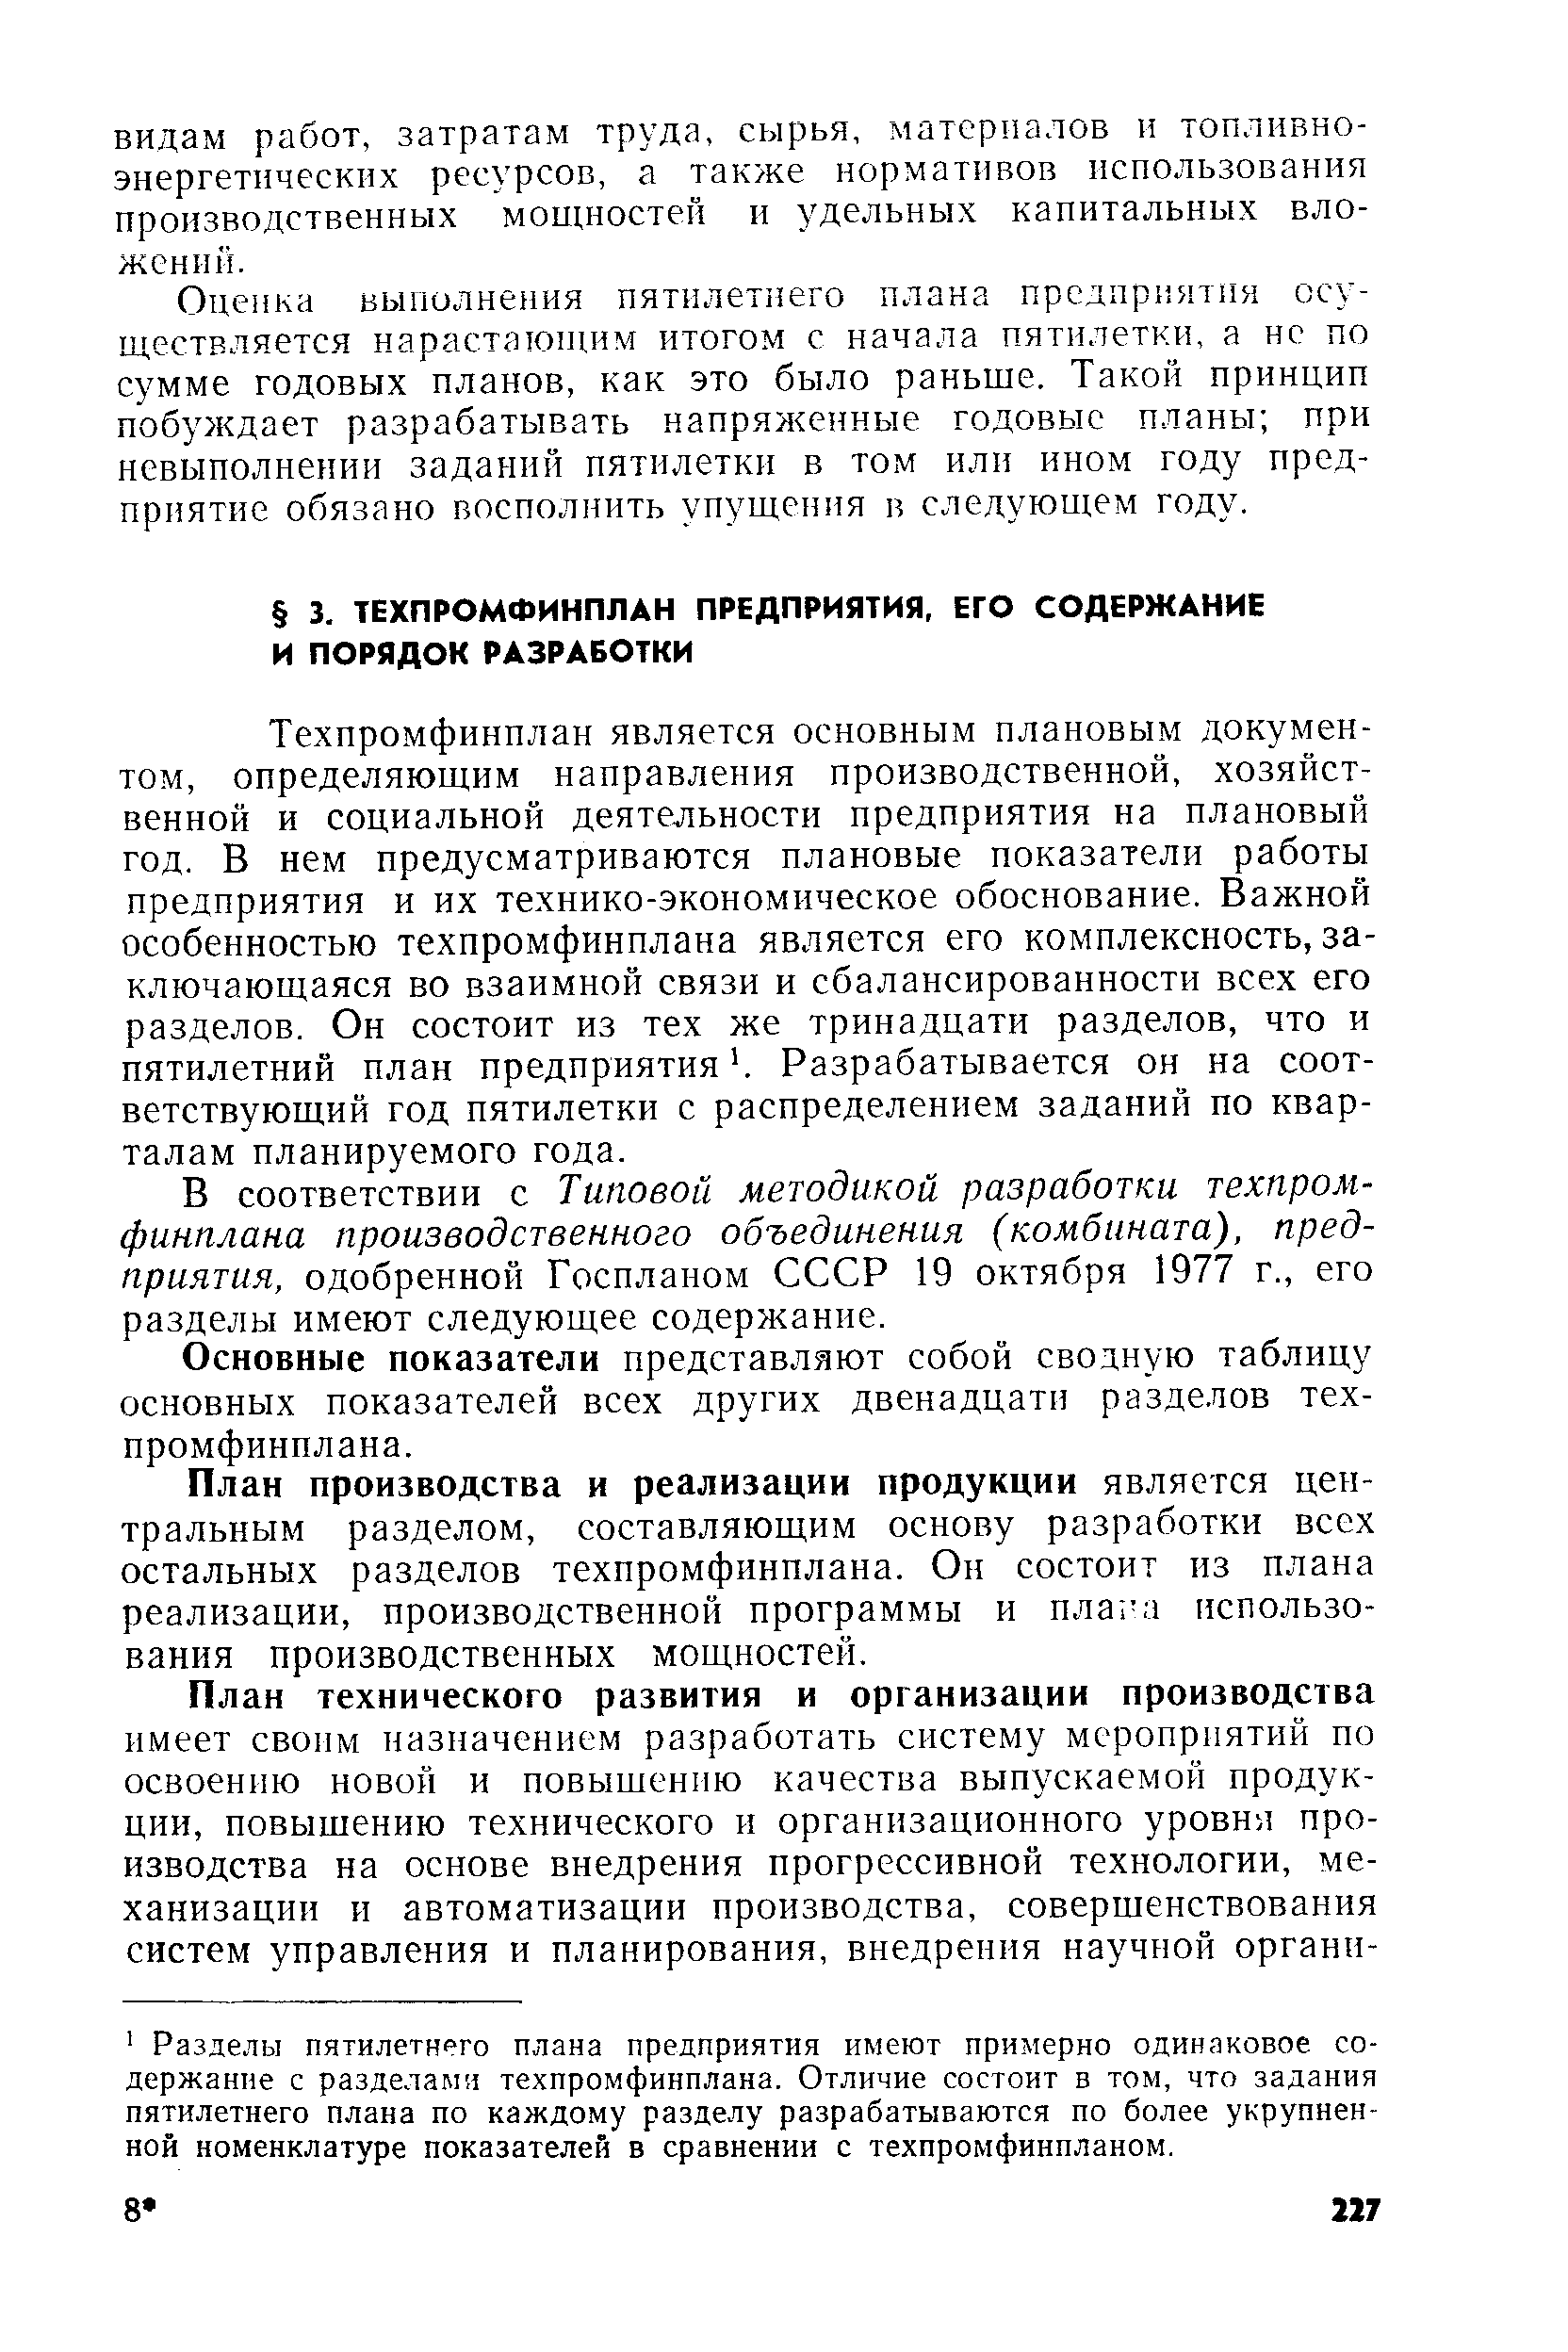 В соответствии с Типовой методикой разработки техпромфинплана производственного объединения (комбината), предприятия, одобренной Госпланом СССР 19 октября 1977 г., его разделы имеют следующее содержание.
